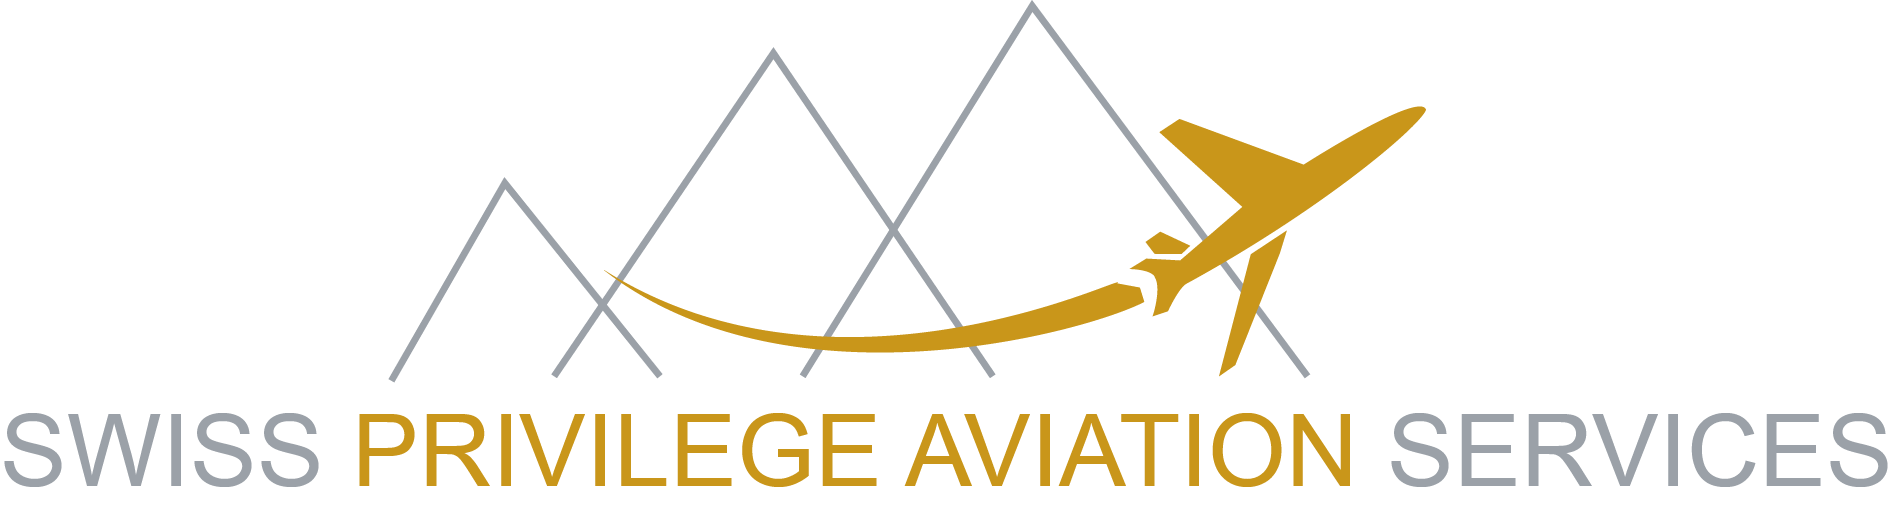 SWISS PRIVILEGE AVIATION SERVICES Logo